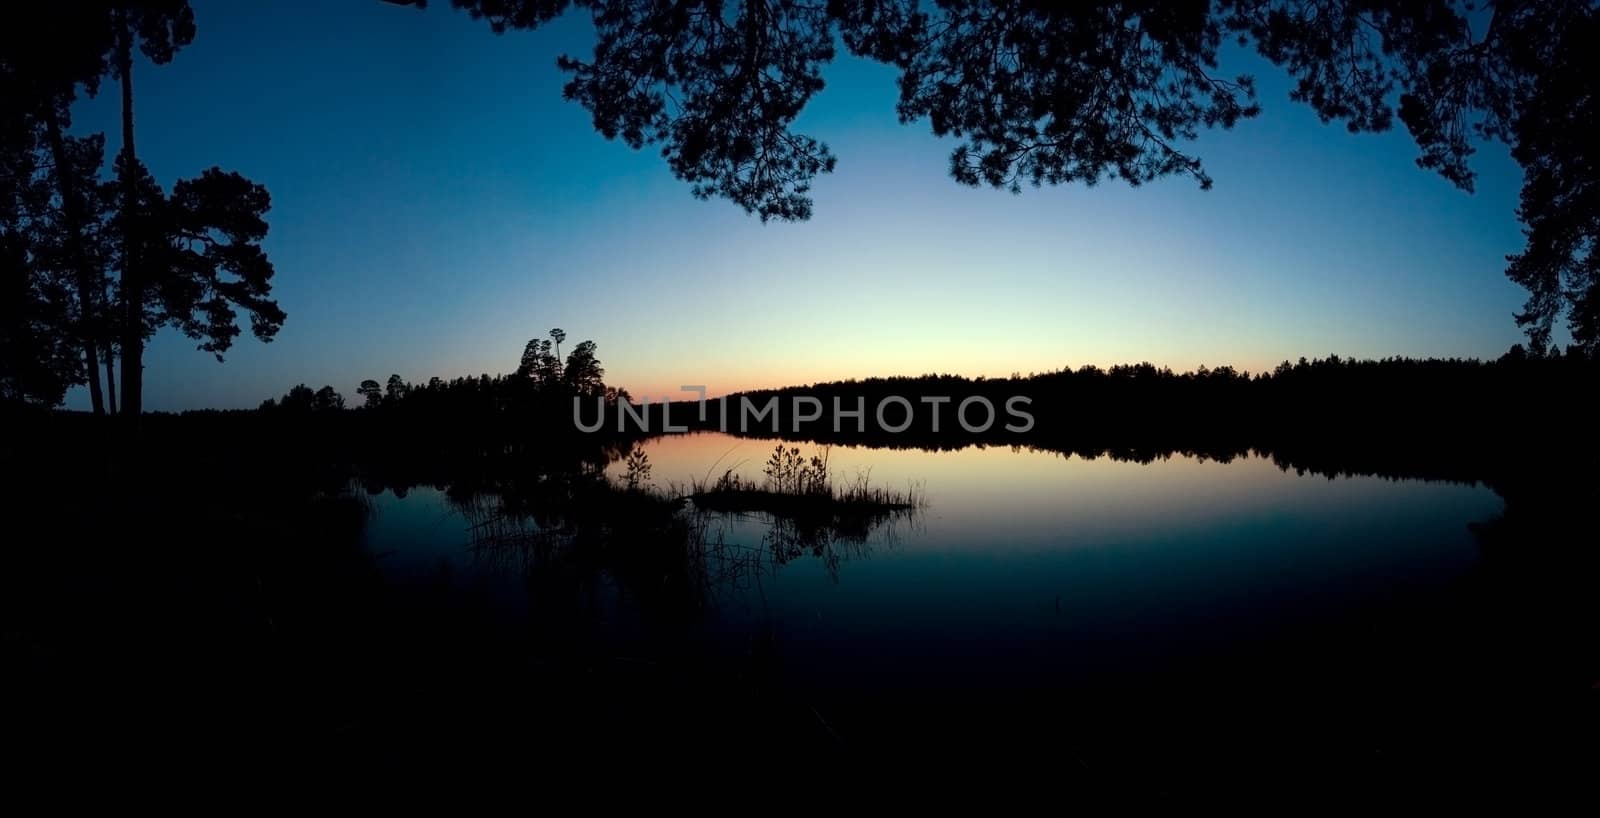 Lake in night by velkol